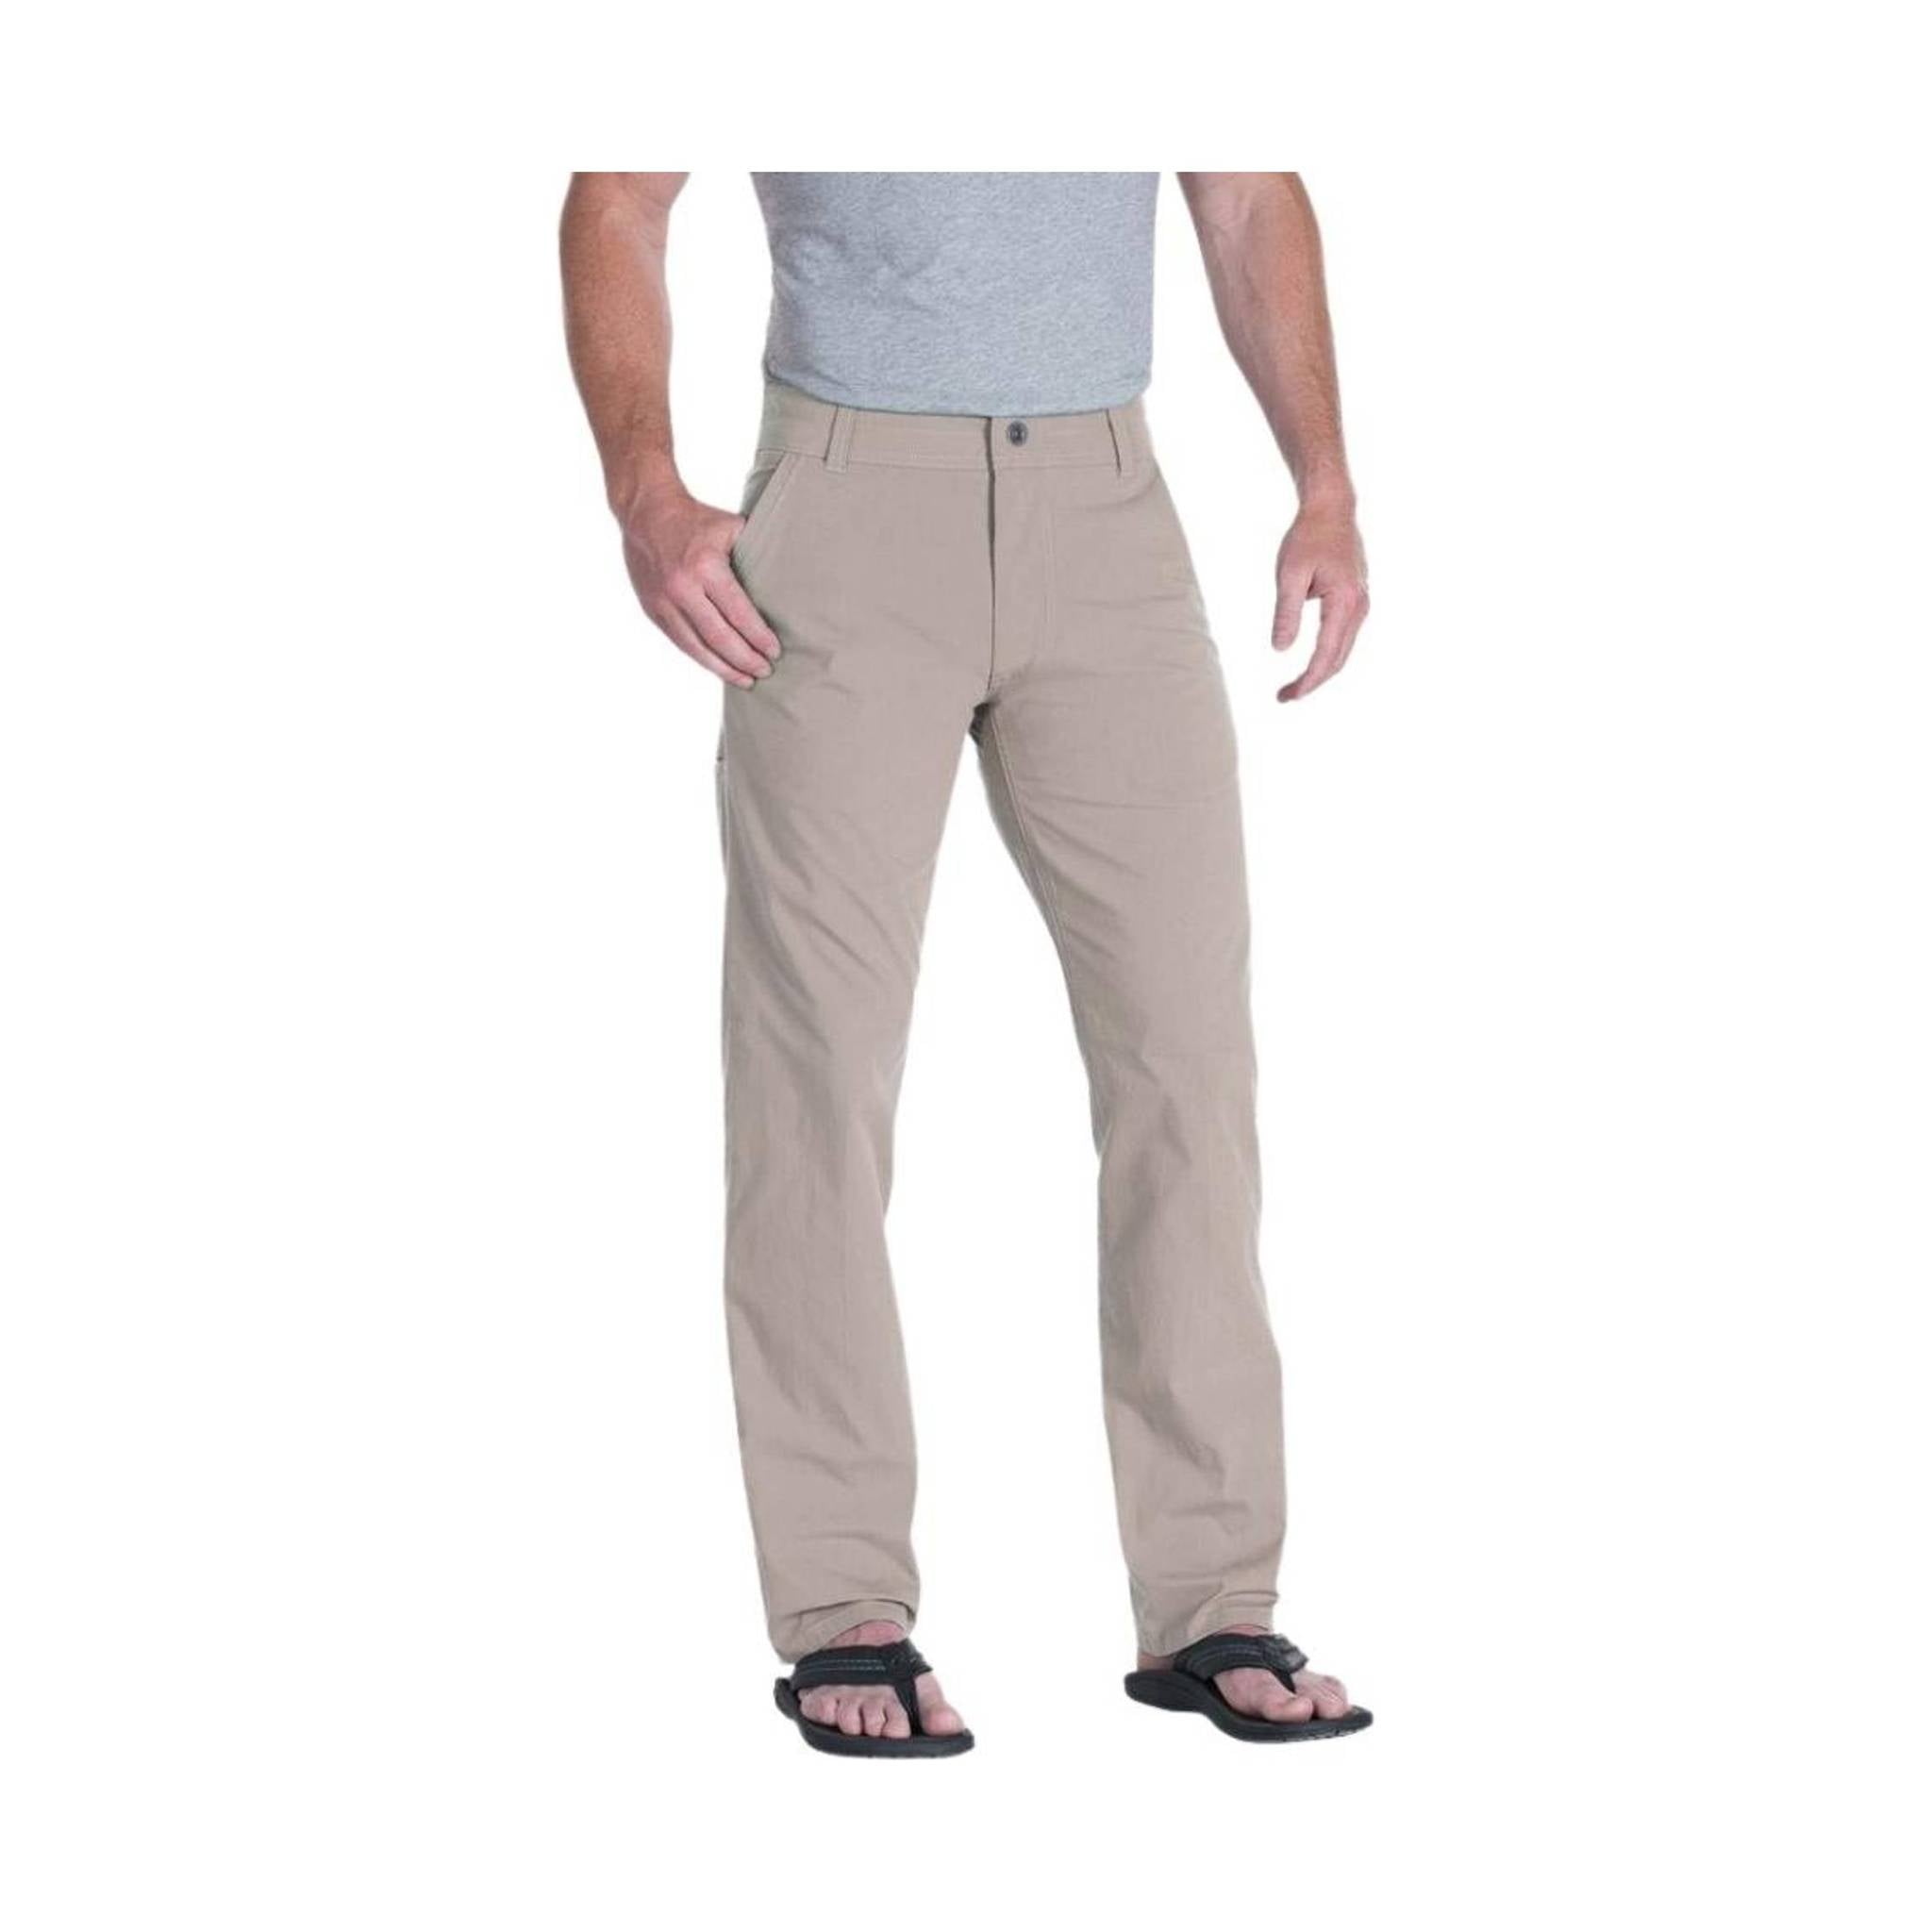 Kuhl Slax Pants Men's 32x34 | Mens pants, Hiking pants mens, Chinos style